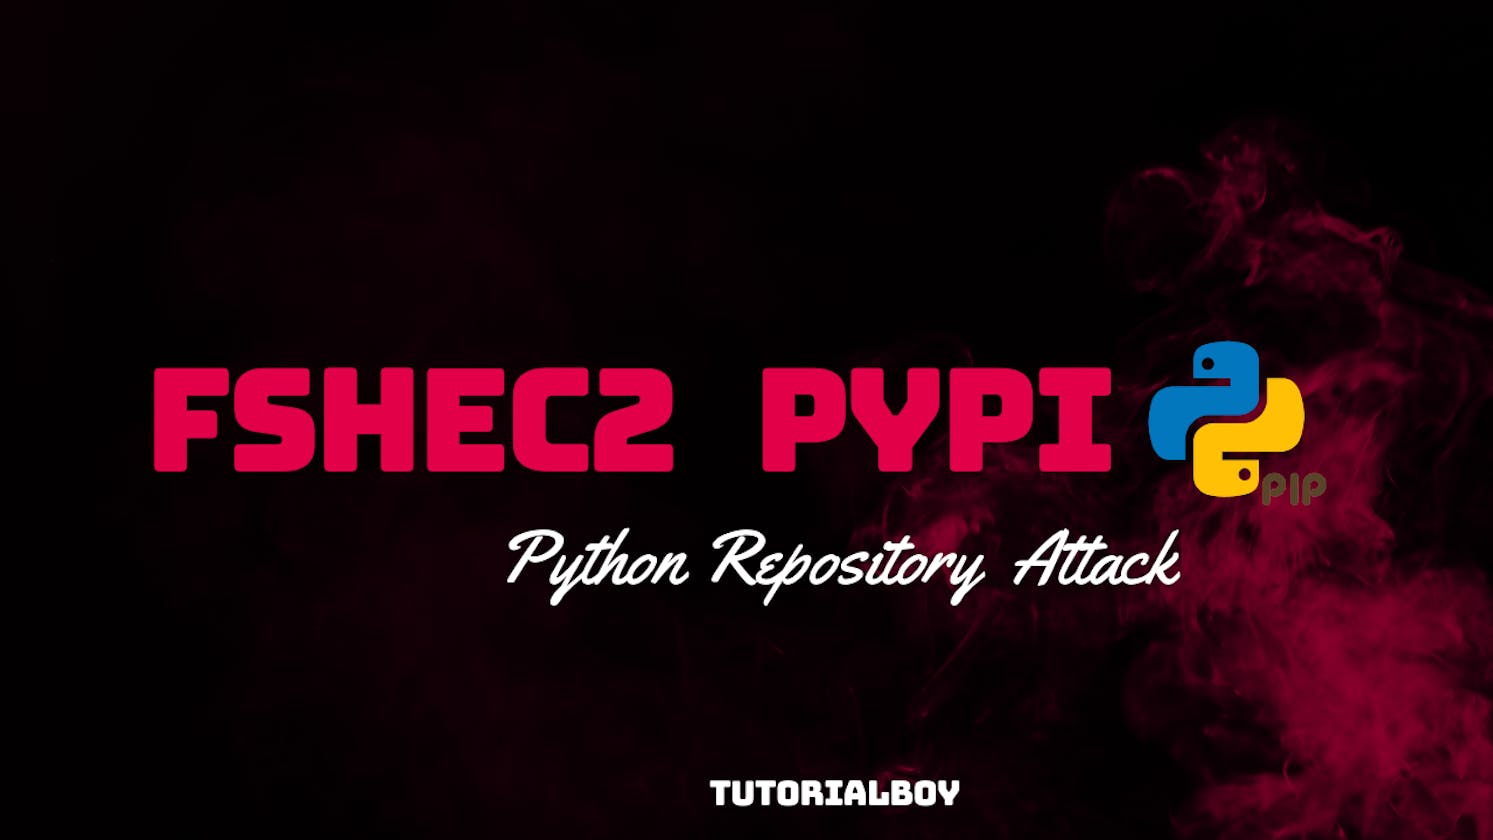 A Malicious Python Repository fshec2 PyPI Attack Analysis